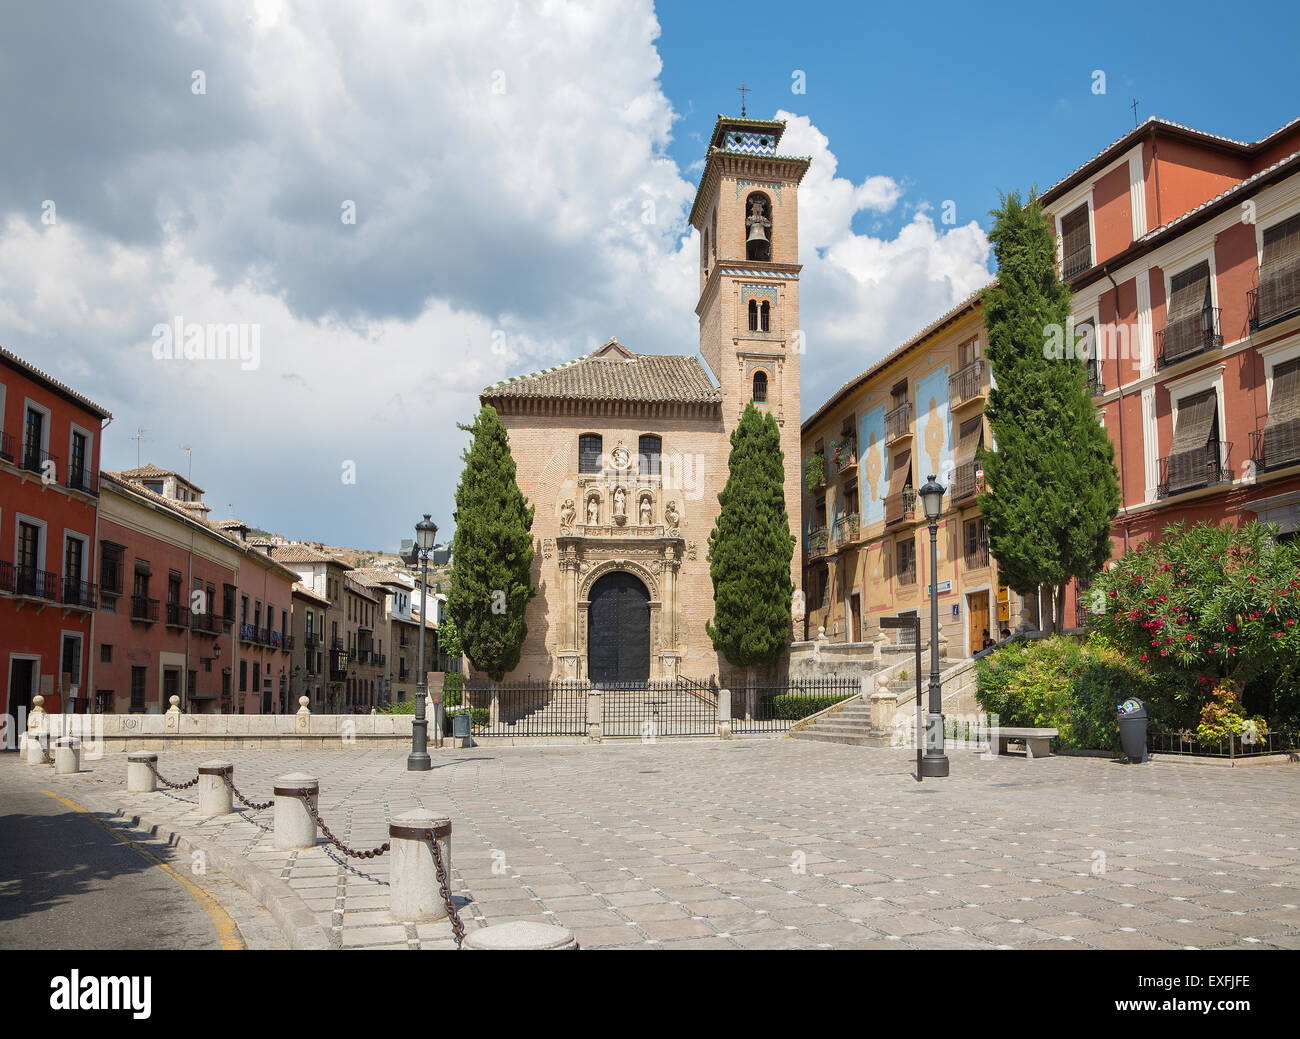 Granada - The St. Ann church and square. Stock Photo